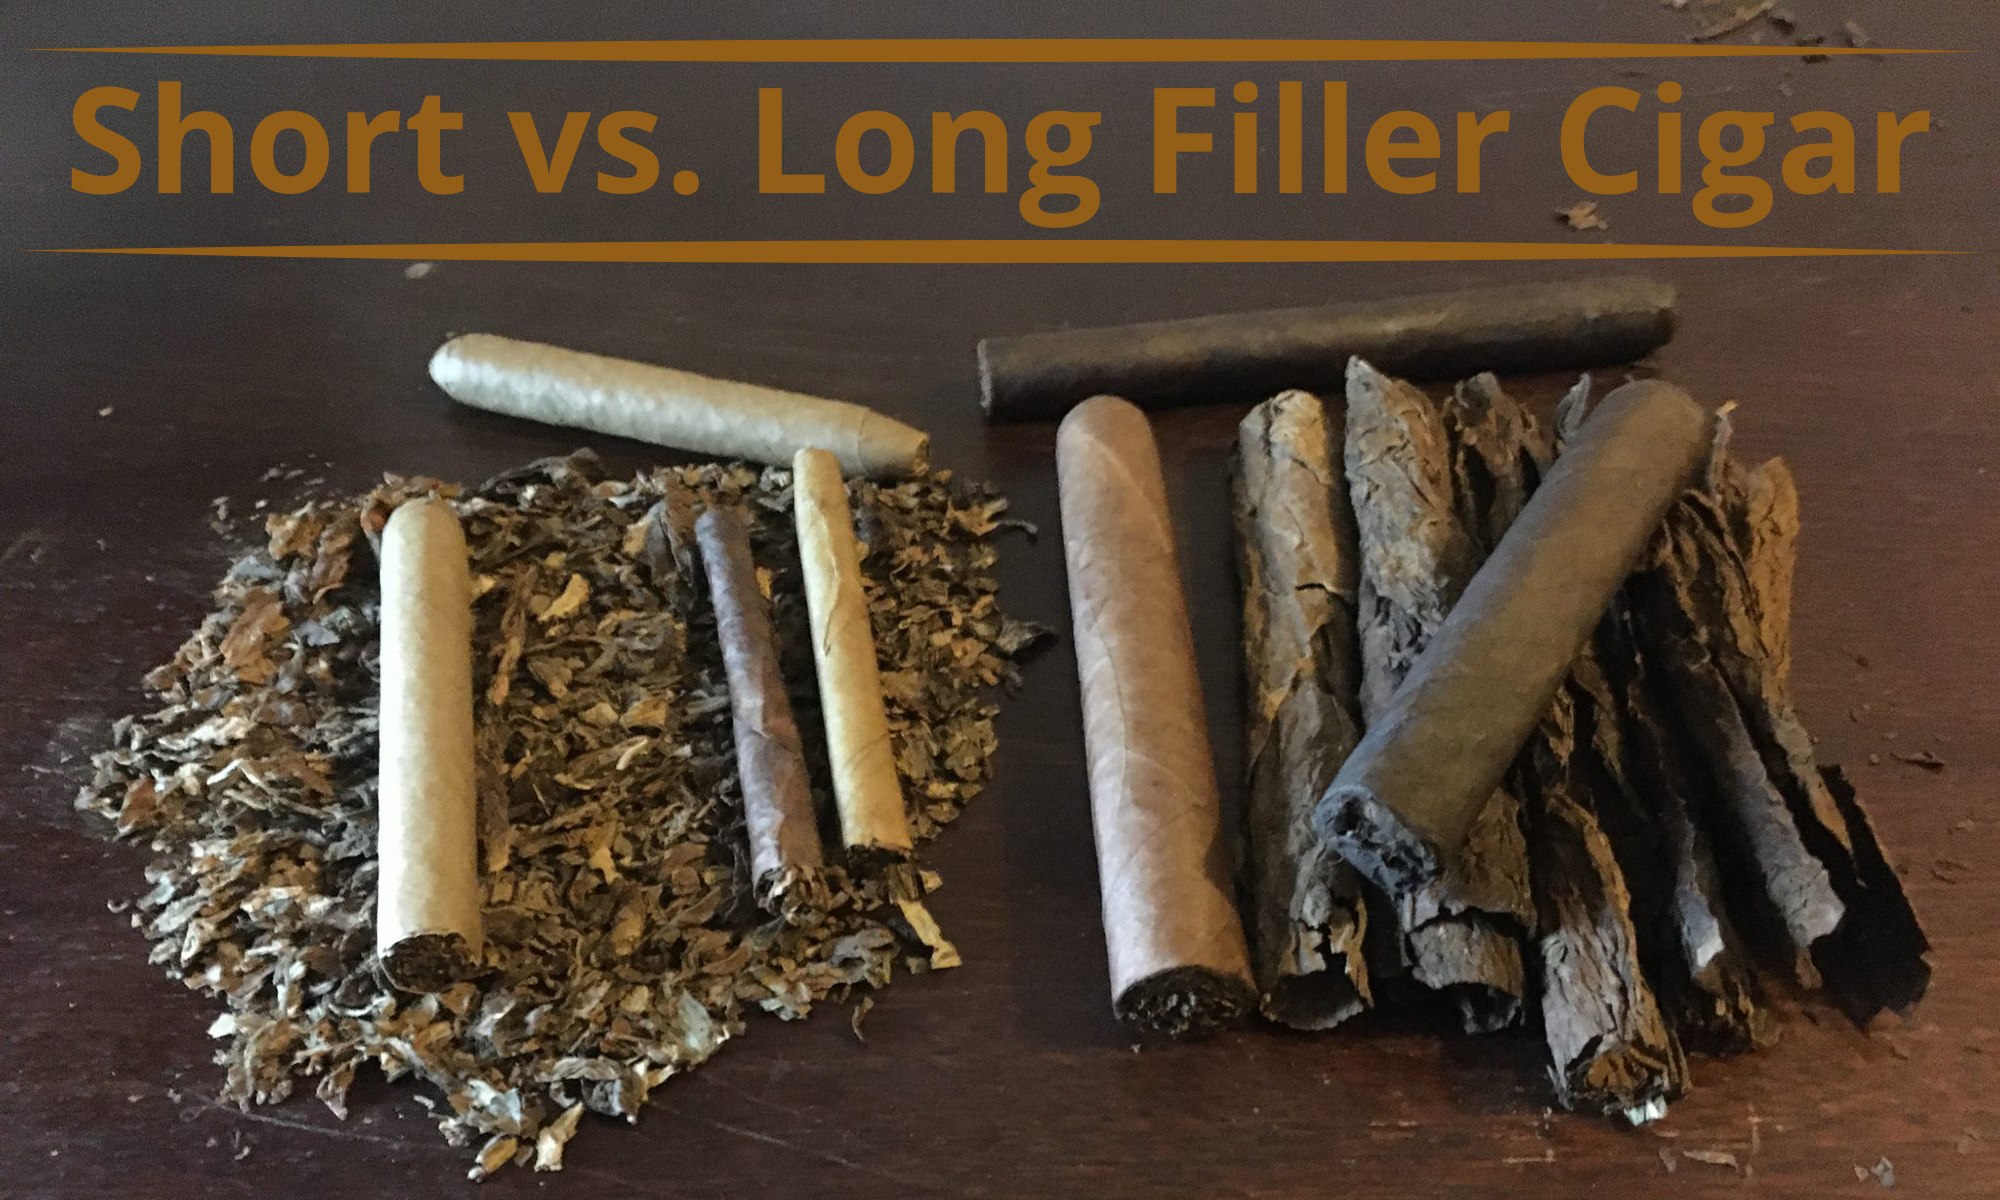 Short filler vs. long filler cigar construction